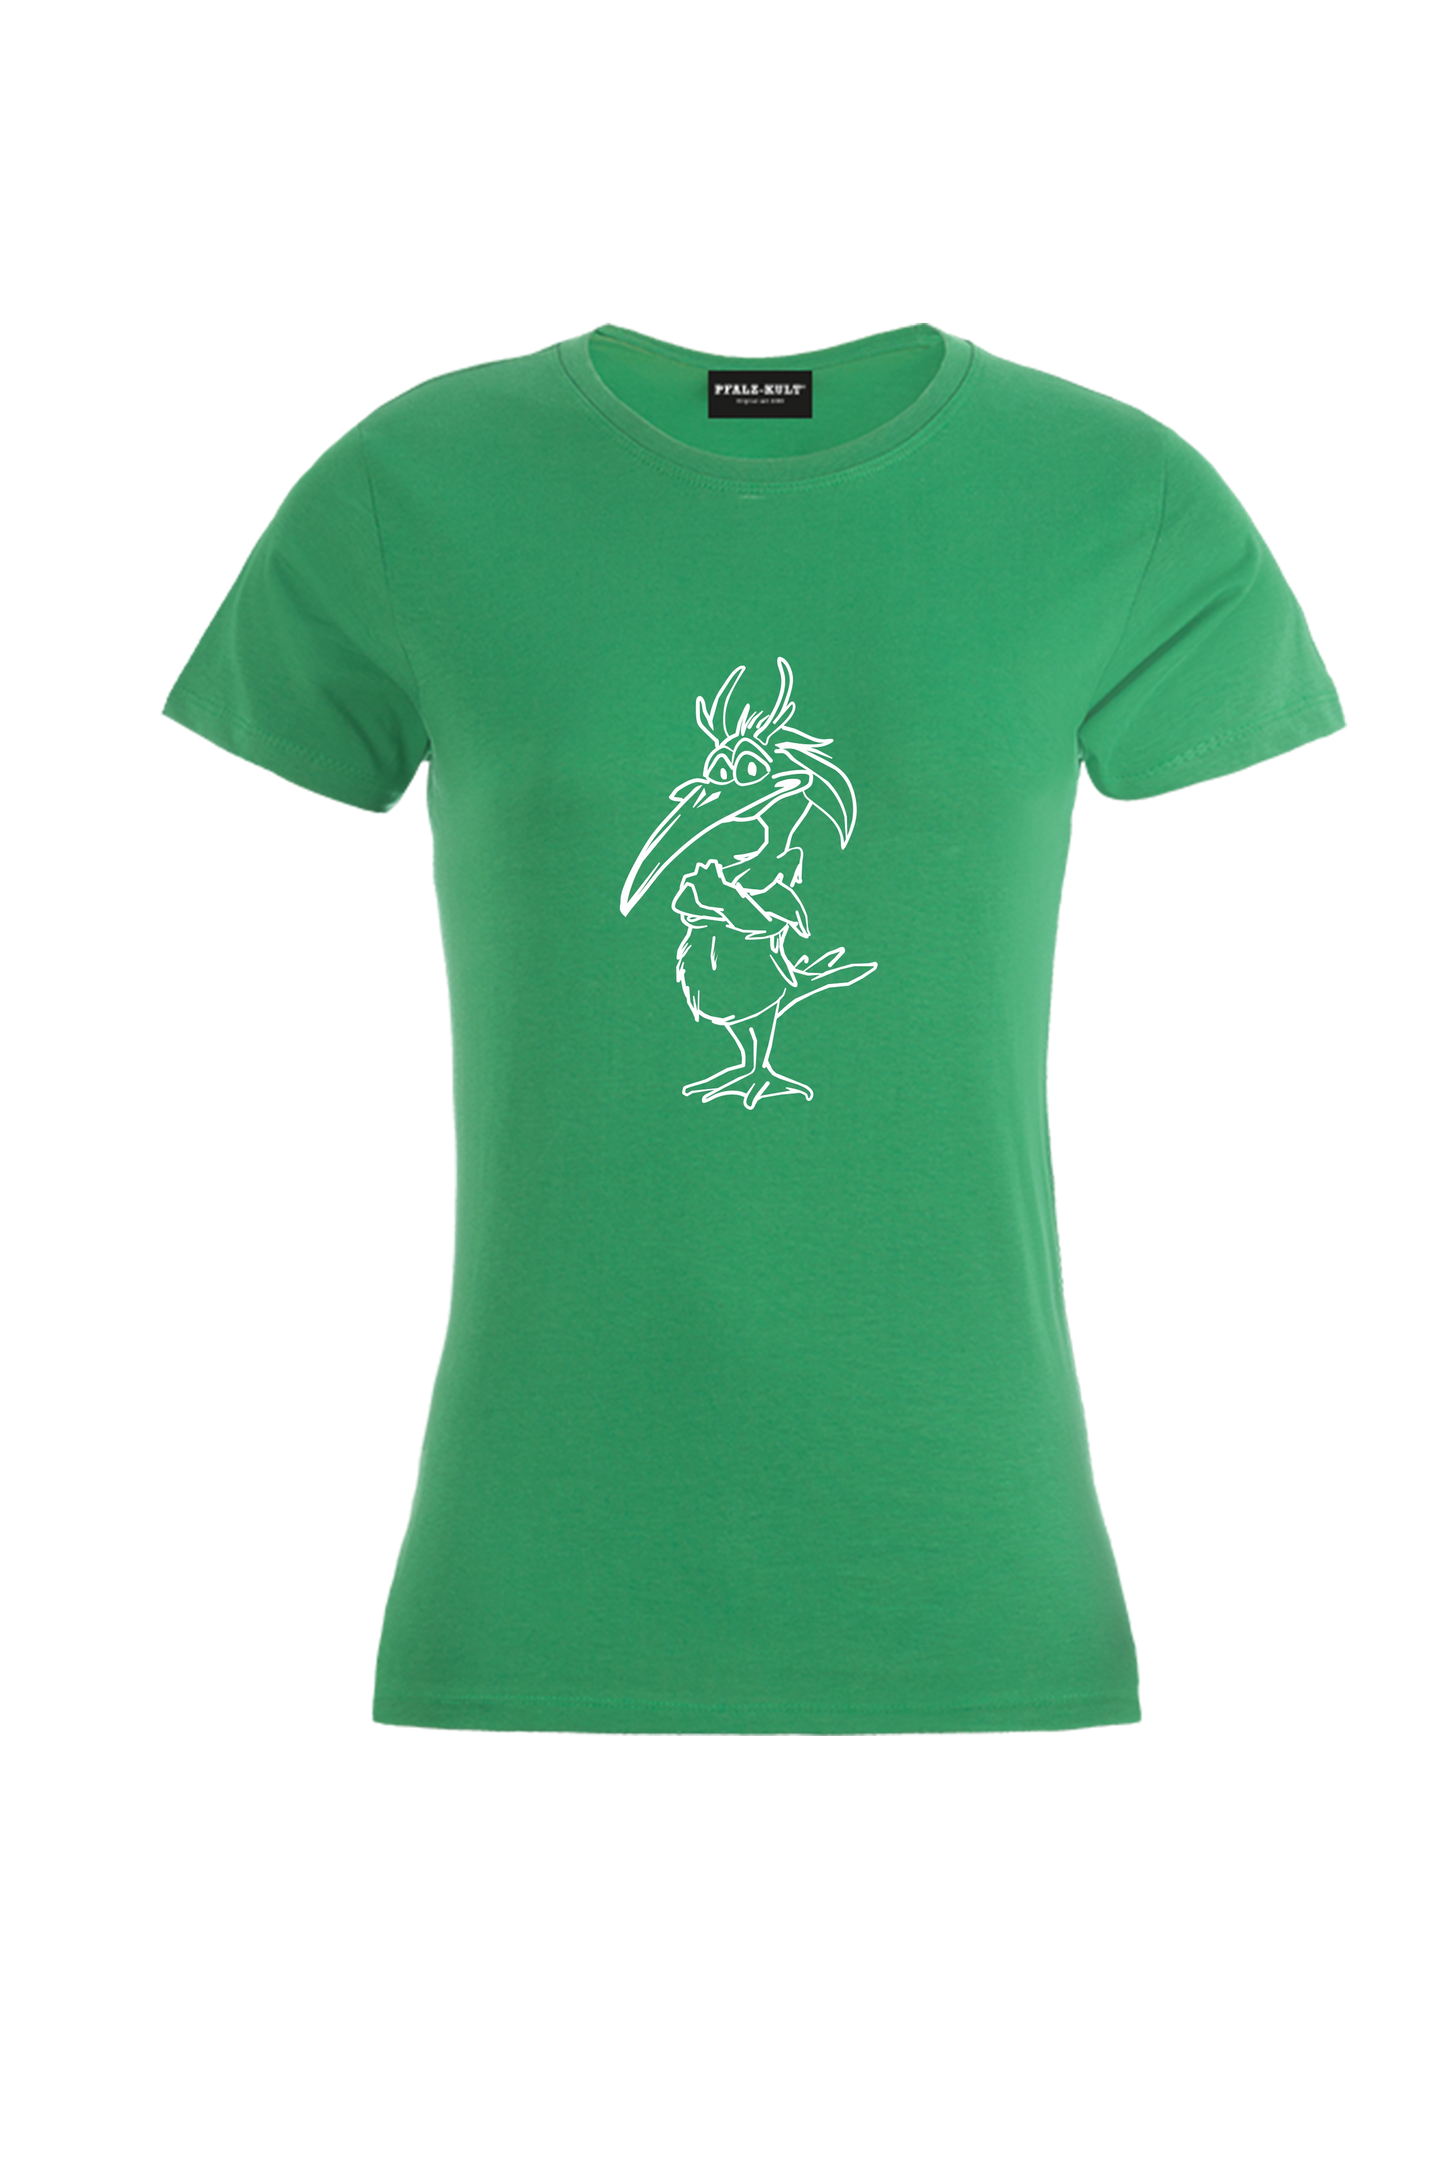 Damen Elwetritsch T-Shirt grün. Pfalzliebe - Pfalzshirts von Pfalzkult aus Bad Dürkheim  